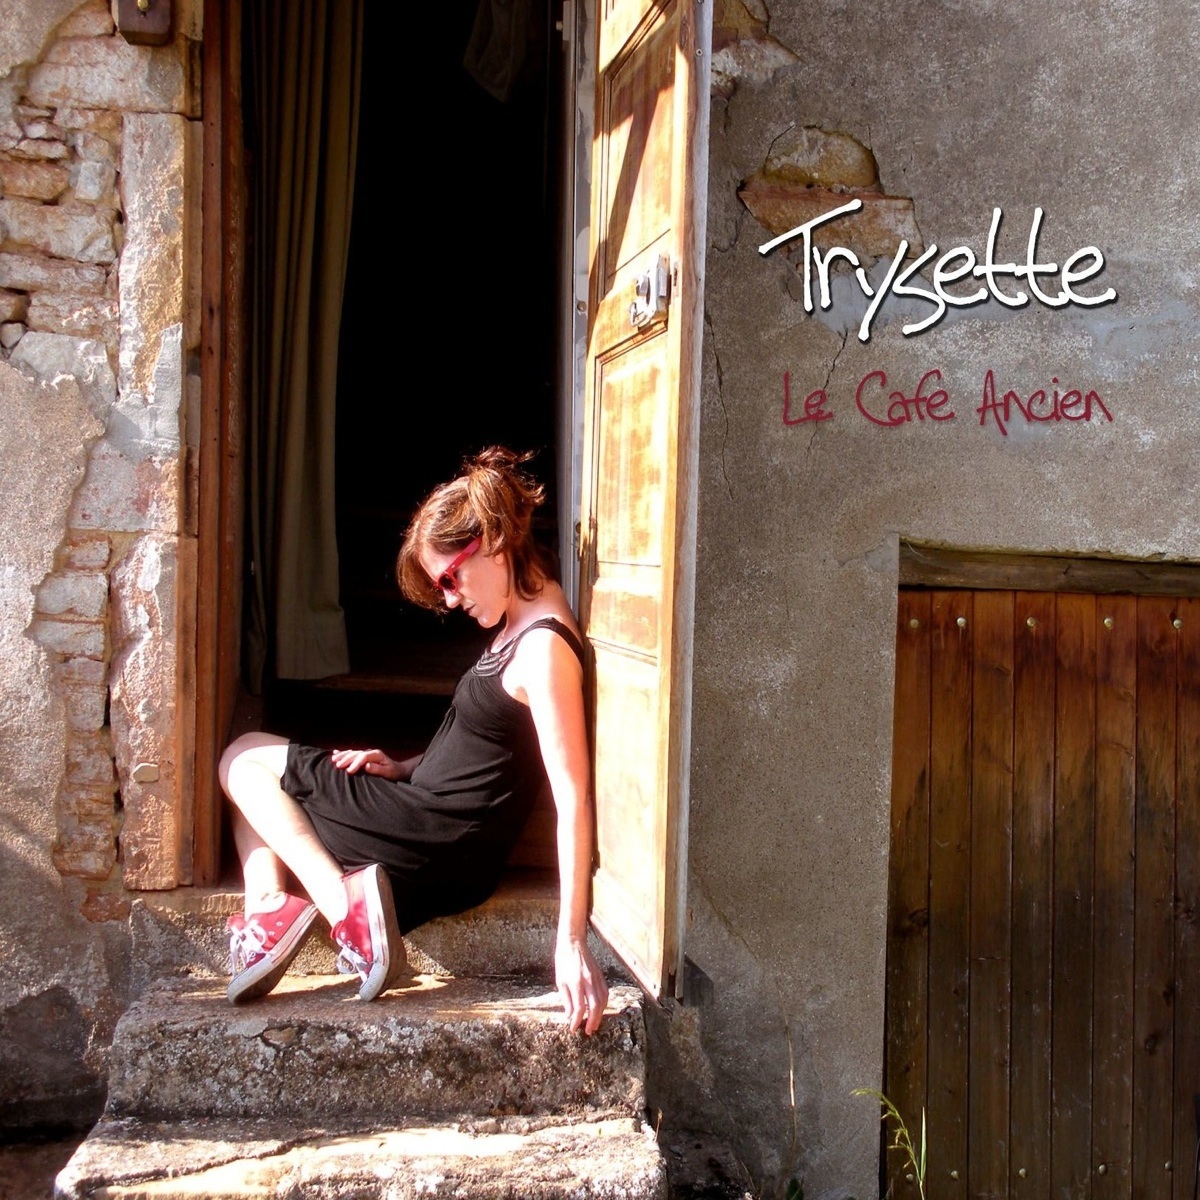 Trysette's latest album Le Cafe Ancien